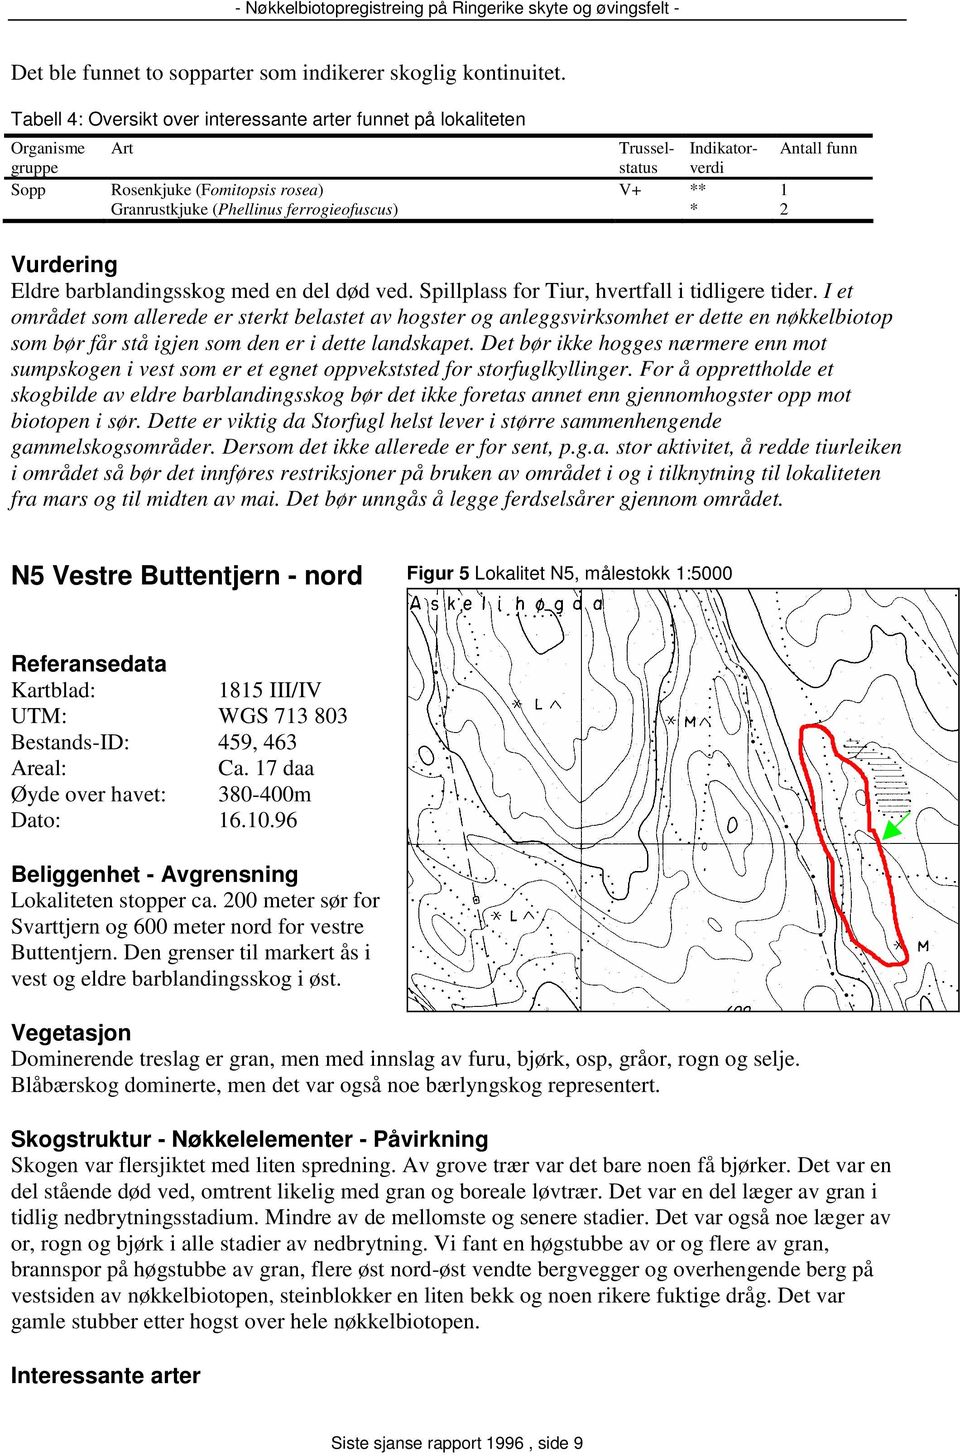 ferrogieofuscus) * 2 Vurdering Eldre barblandingsskog med en del død ved. Spillplass for Tiur, hvertfall i tidligere tider.